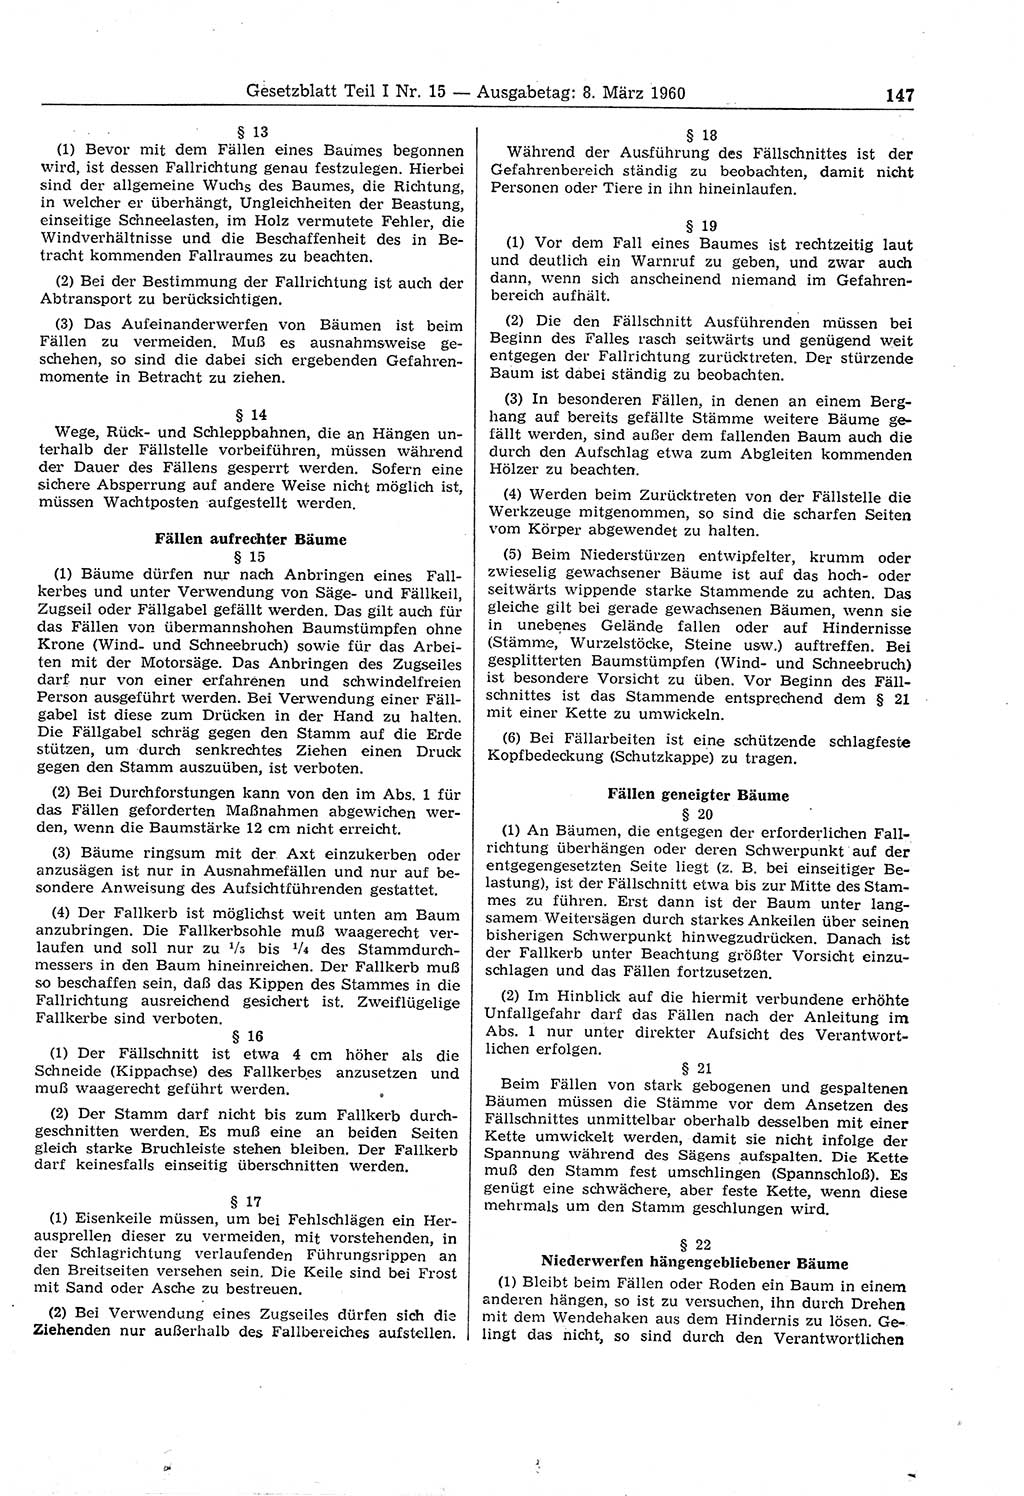 Gesetzblatt (GBl.) der Deutschen Demokratischen Republik (DDR) Teil Ⅰ 1960, Seite 147 (GBl. DDR Ⅰ 1960, S. 147)